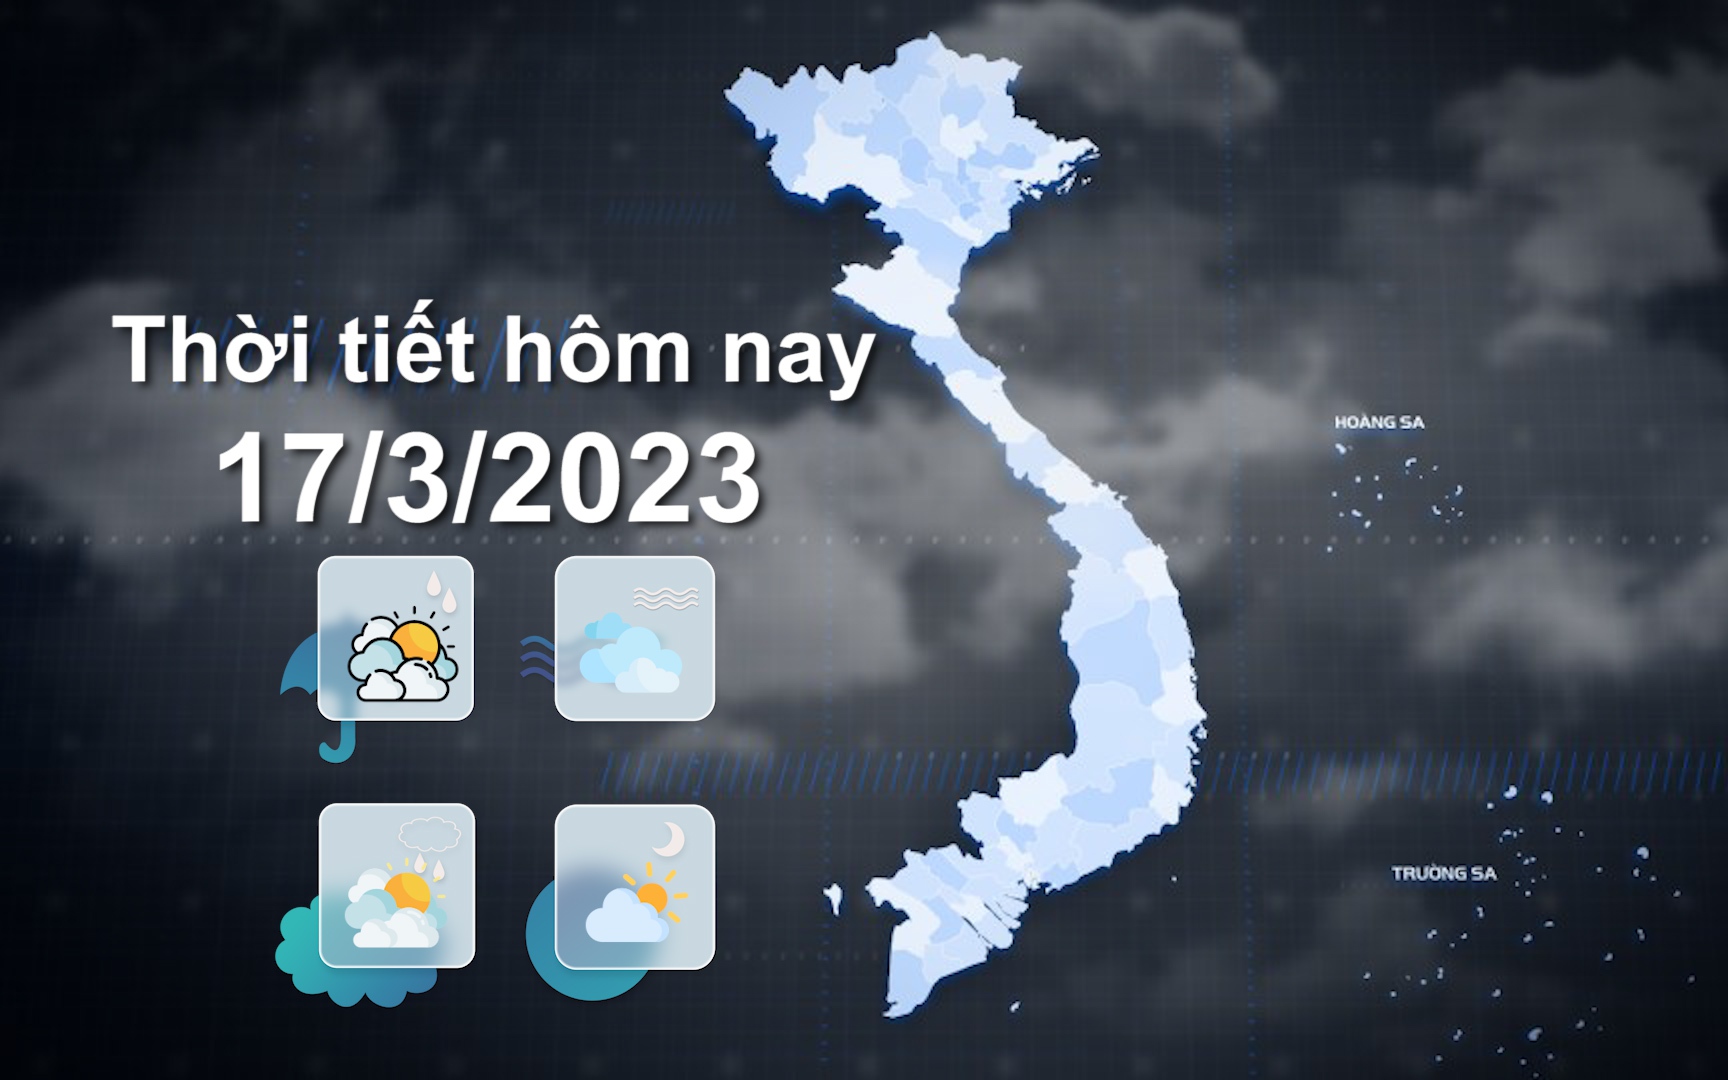 Thời tiết hôm nay 17/3/2023: Bắc Bộ có mưa rào rải rác, Tây Nguyên và Nam Bộ ngày nắng